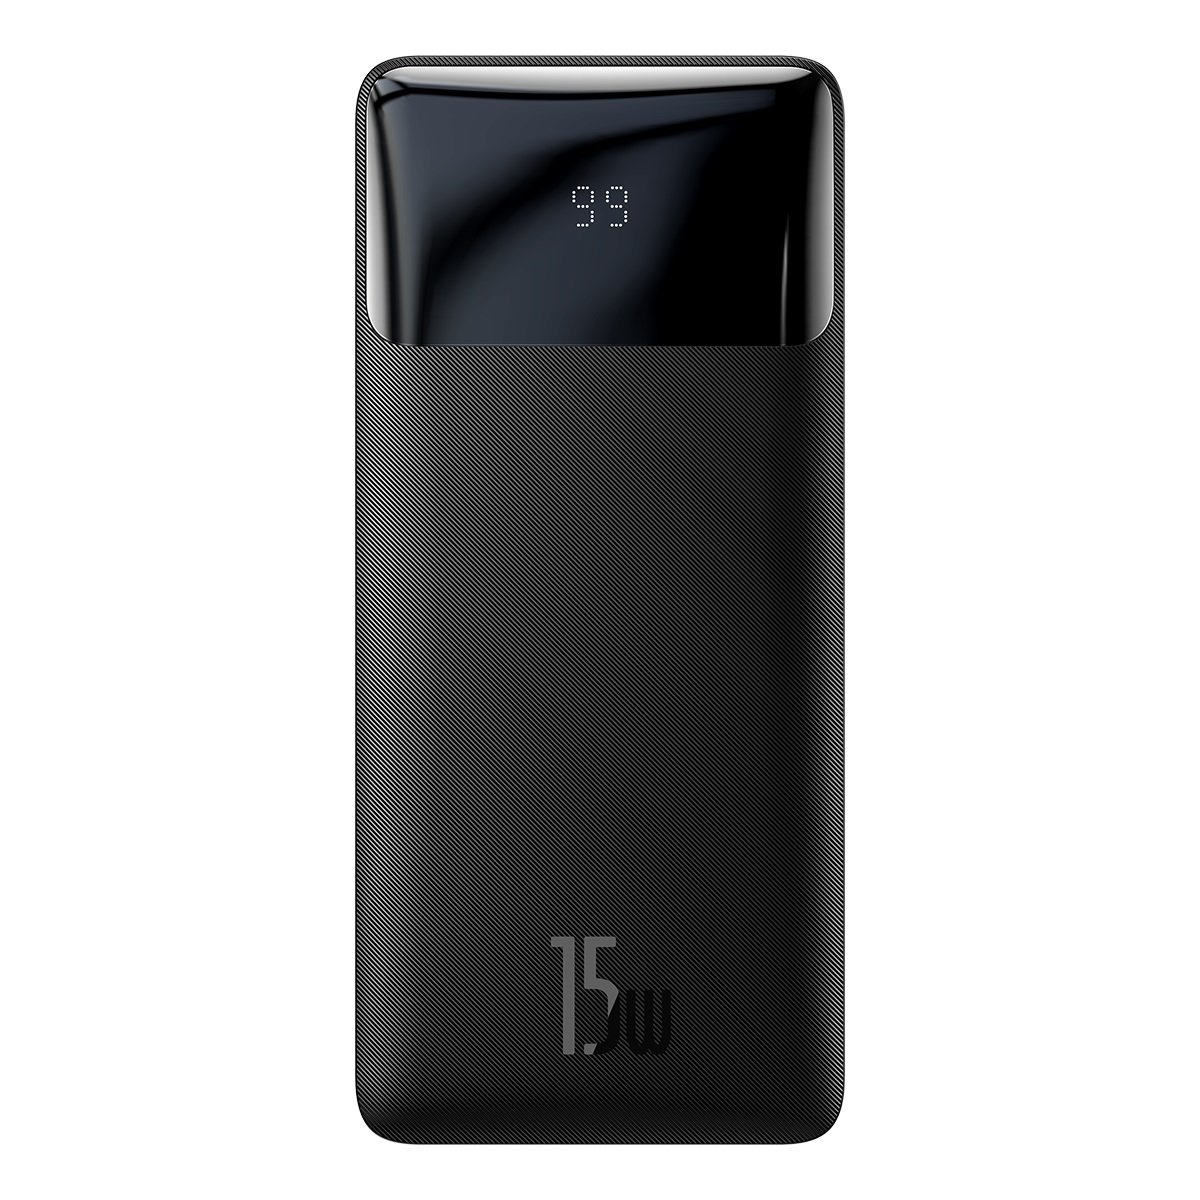 Внешний аккумулятор Baseus PPBD10 10000 мА/ч для планшетов, черный (PPBD050001) - купить в М.видео, цена на Мегамаркет